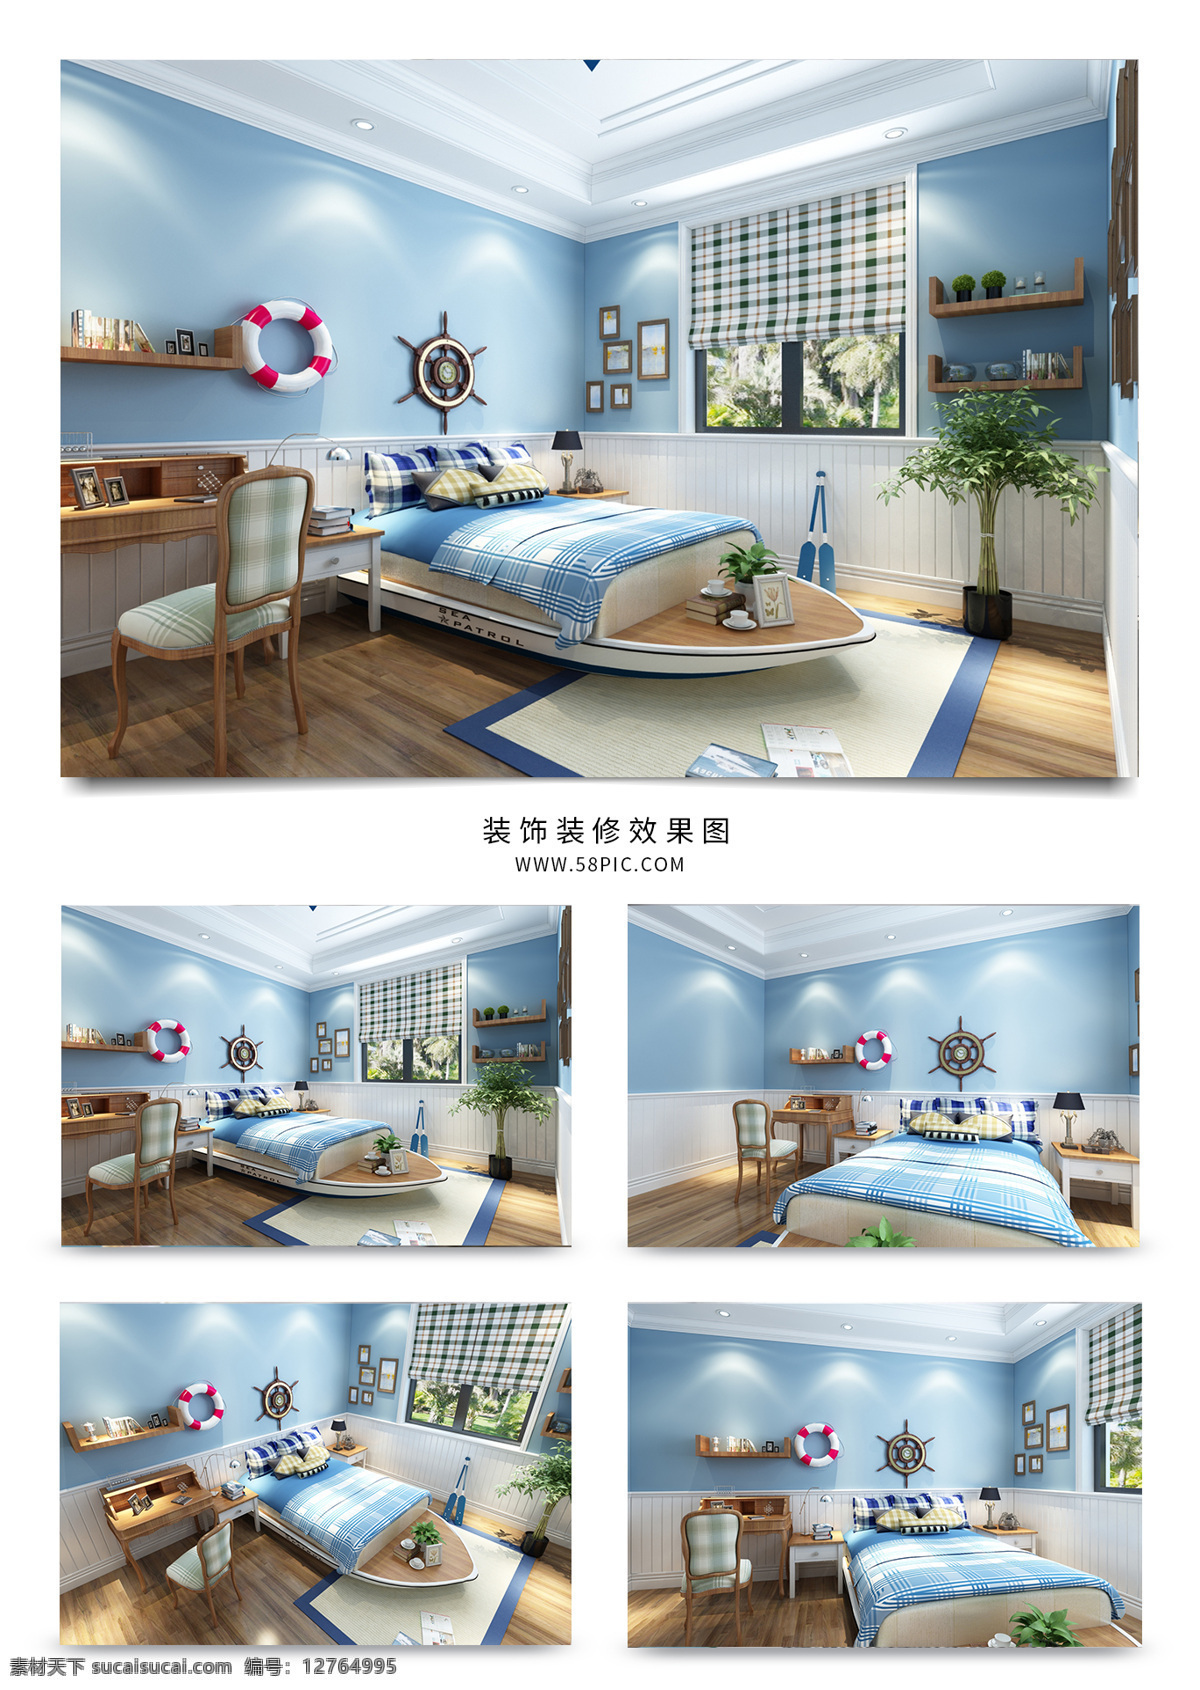 现代 简约 风格 家装 儿童 房 效果图 蓝色 简洁 儿童房 模型 护栏 3dmax 木地板